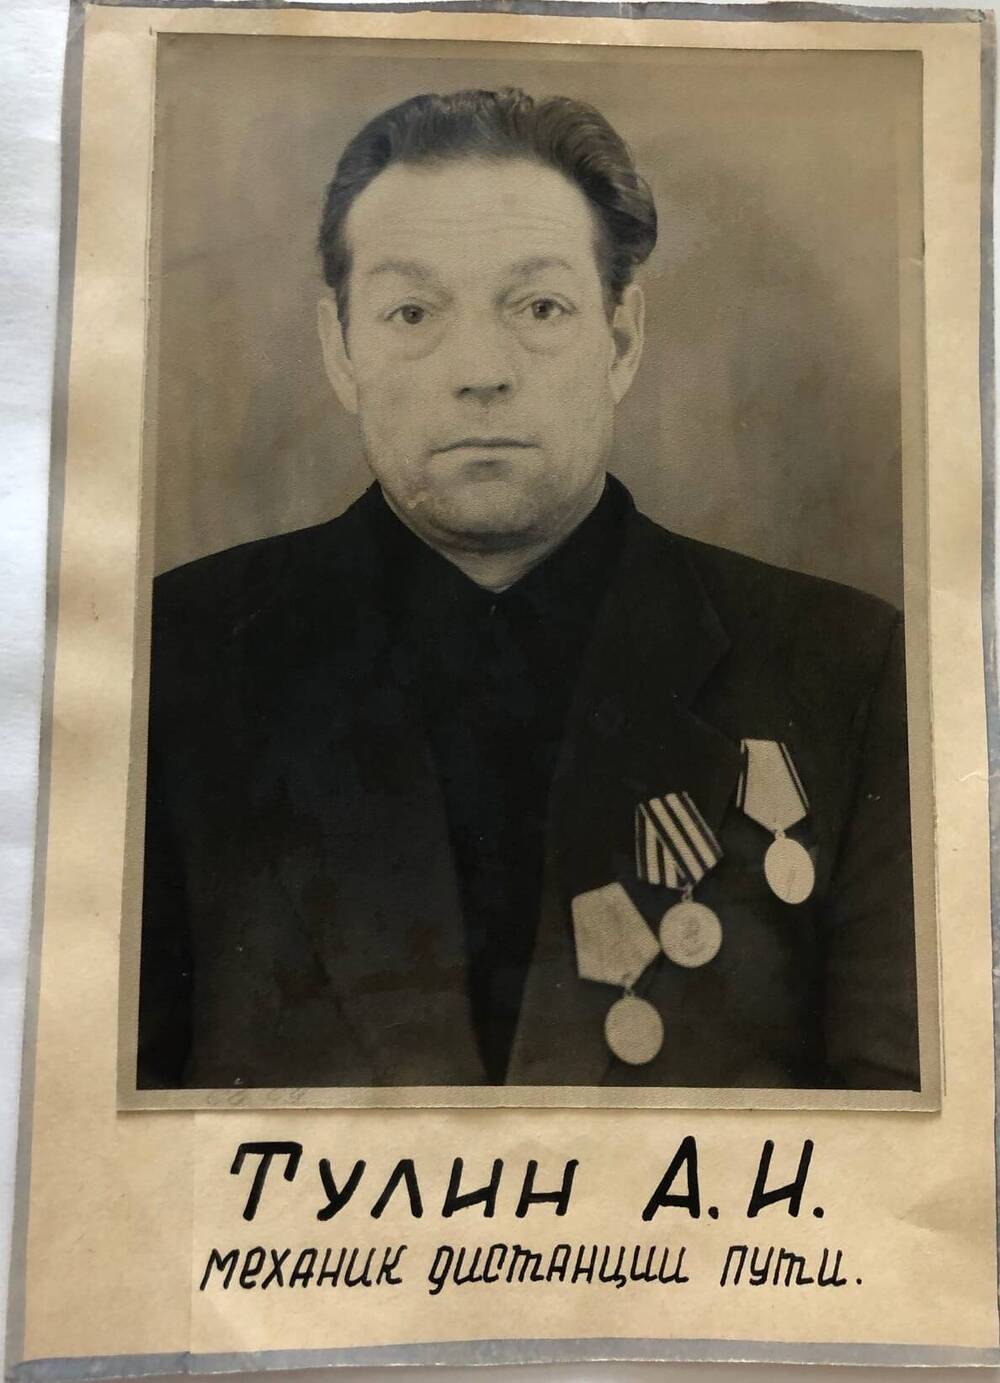 Фотография Тулина А.И., камышанина, участника Великой Отечественной войны 1941-1945 гг., защитника Сталинграда